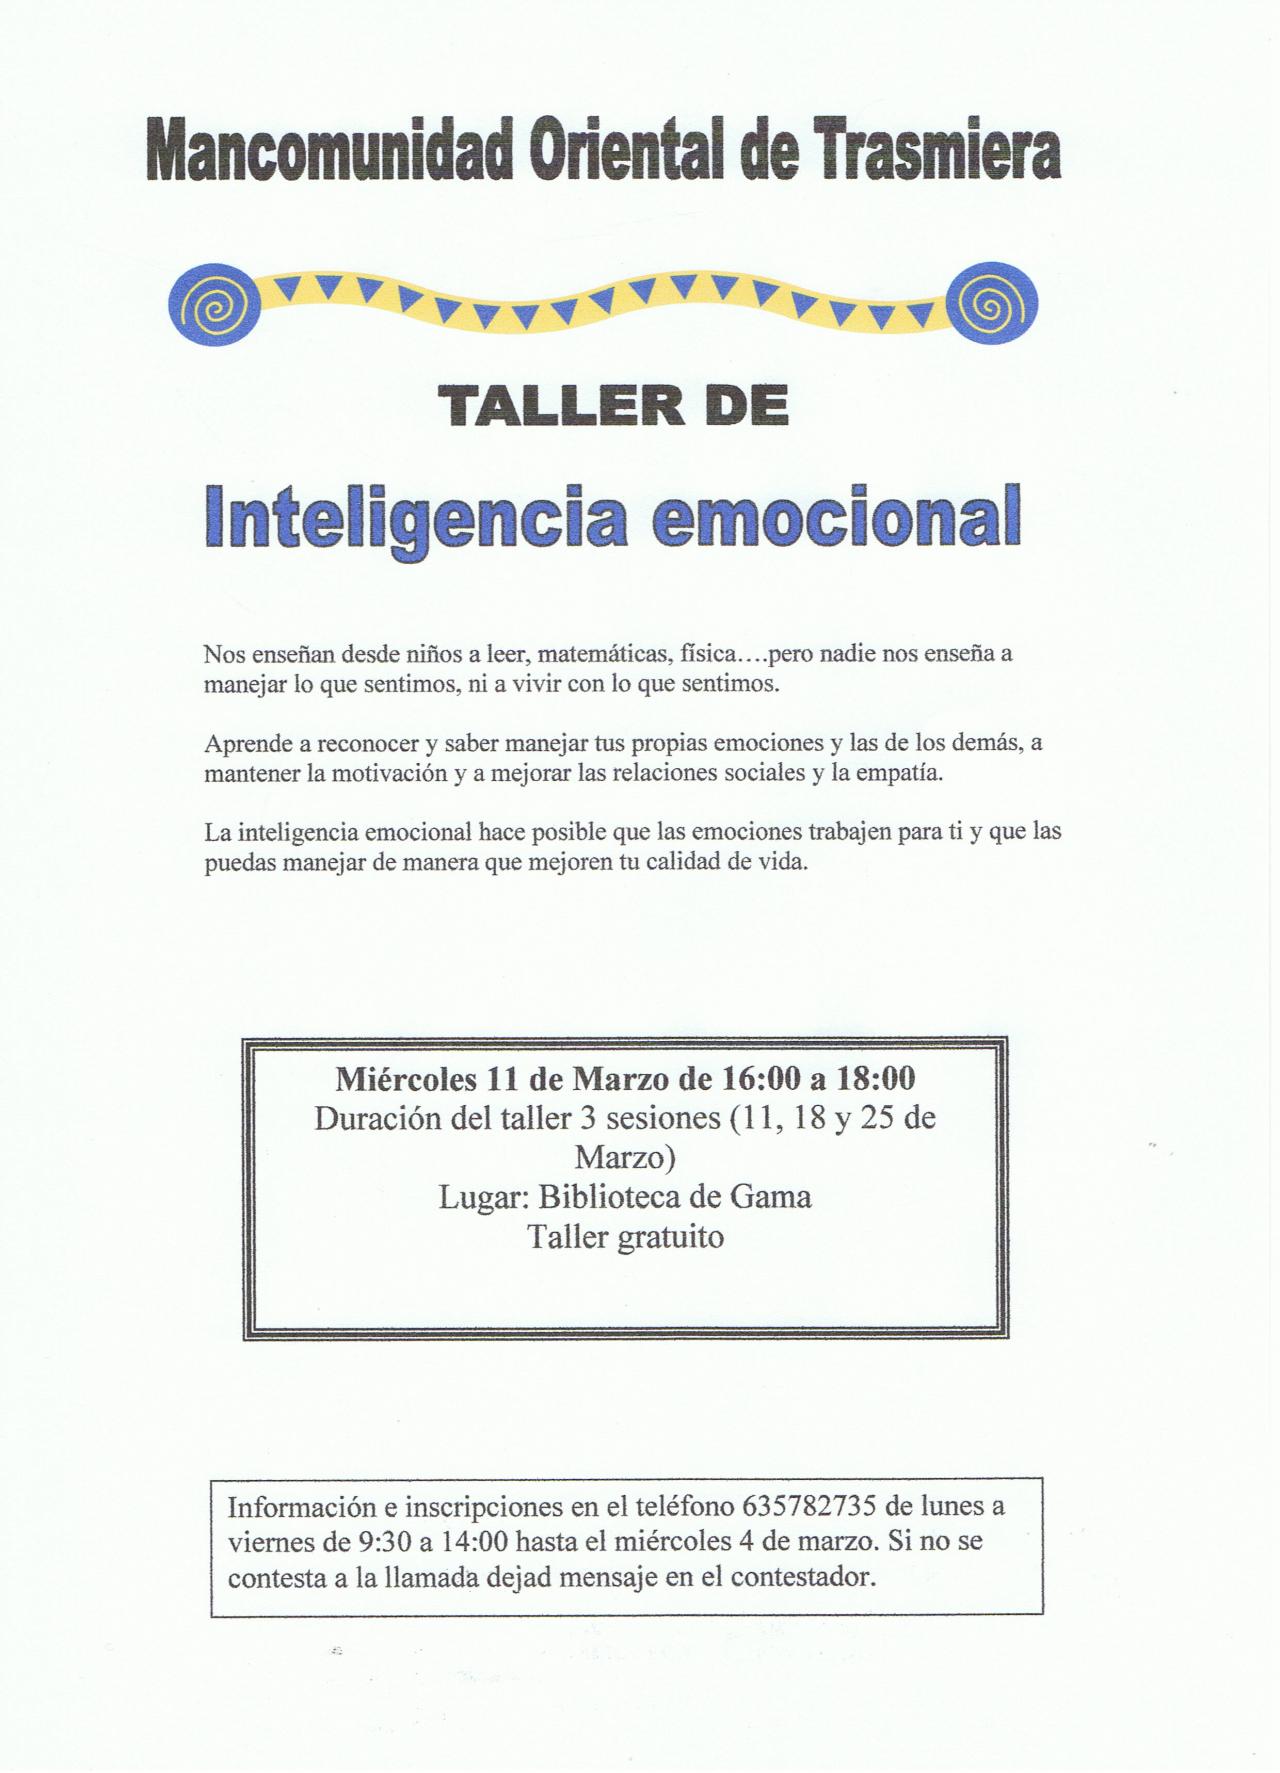 Inteligencia emocional1424166739.jpg